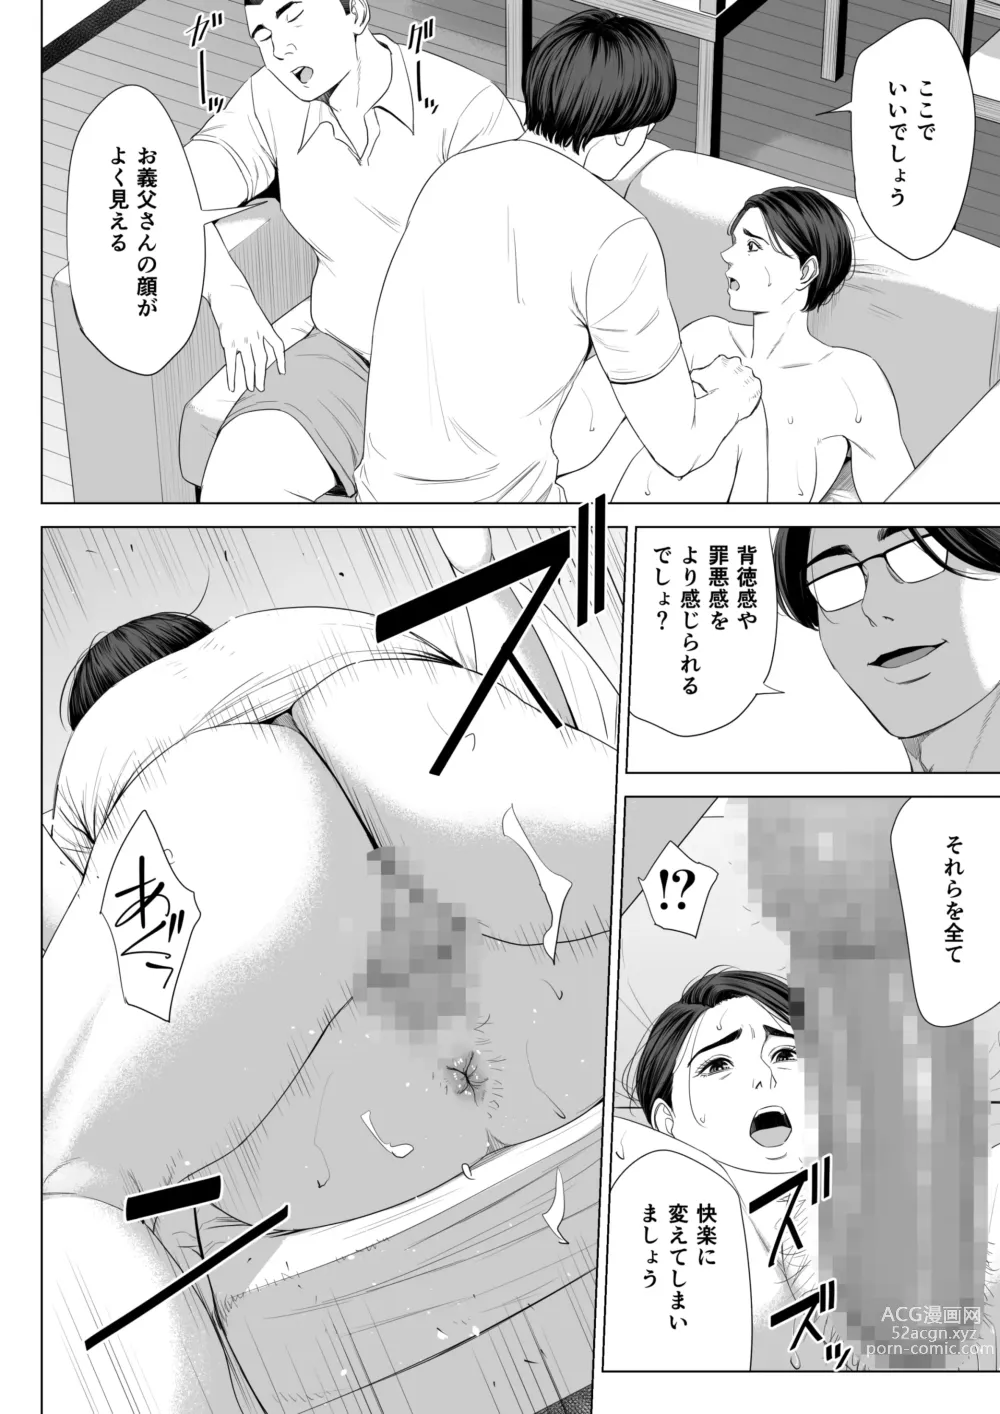 Page 71 of doujinshi Gibo no Tsukaeru Karada.